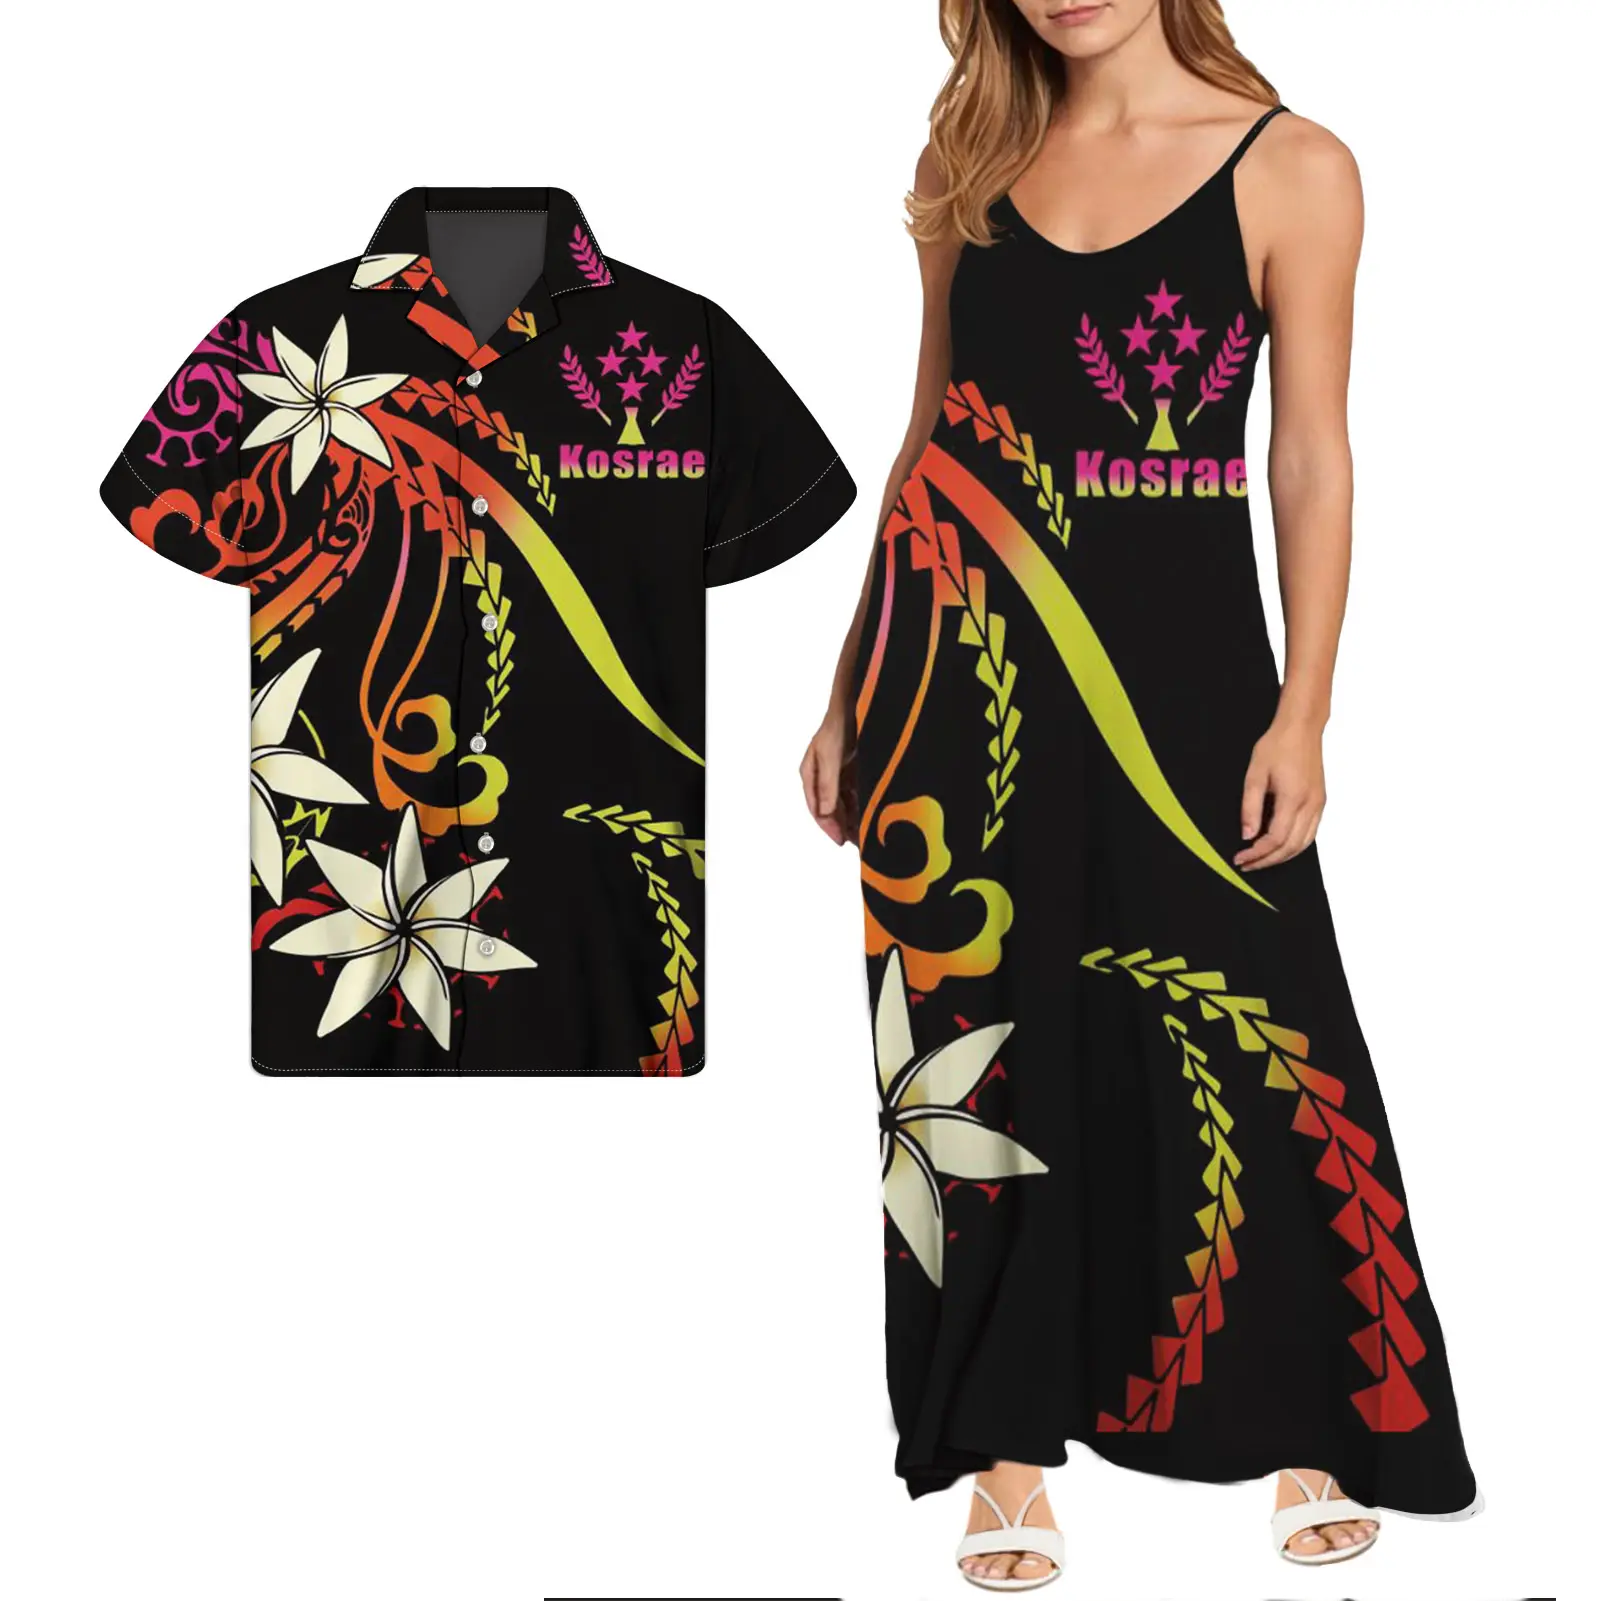 Лидер продаж, платье с принтом, полинезийское корейское племенное летнее платье макси из полиэстера для девушек и гавайская рубашка, индивидуальные платья оптом